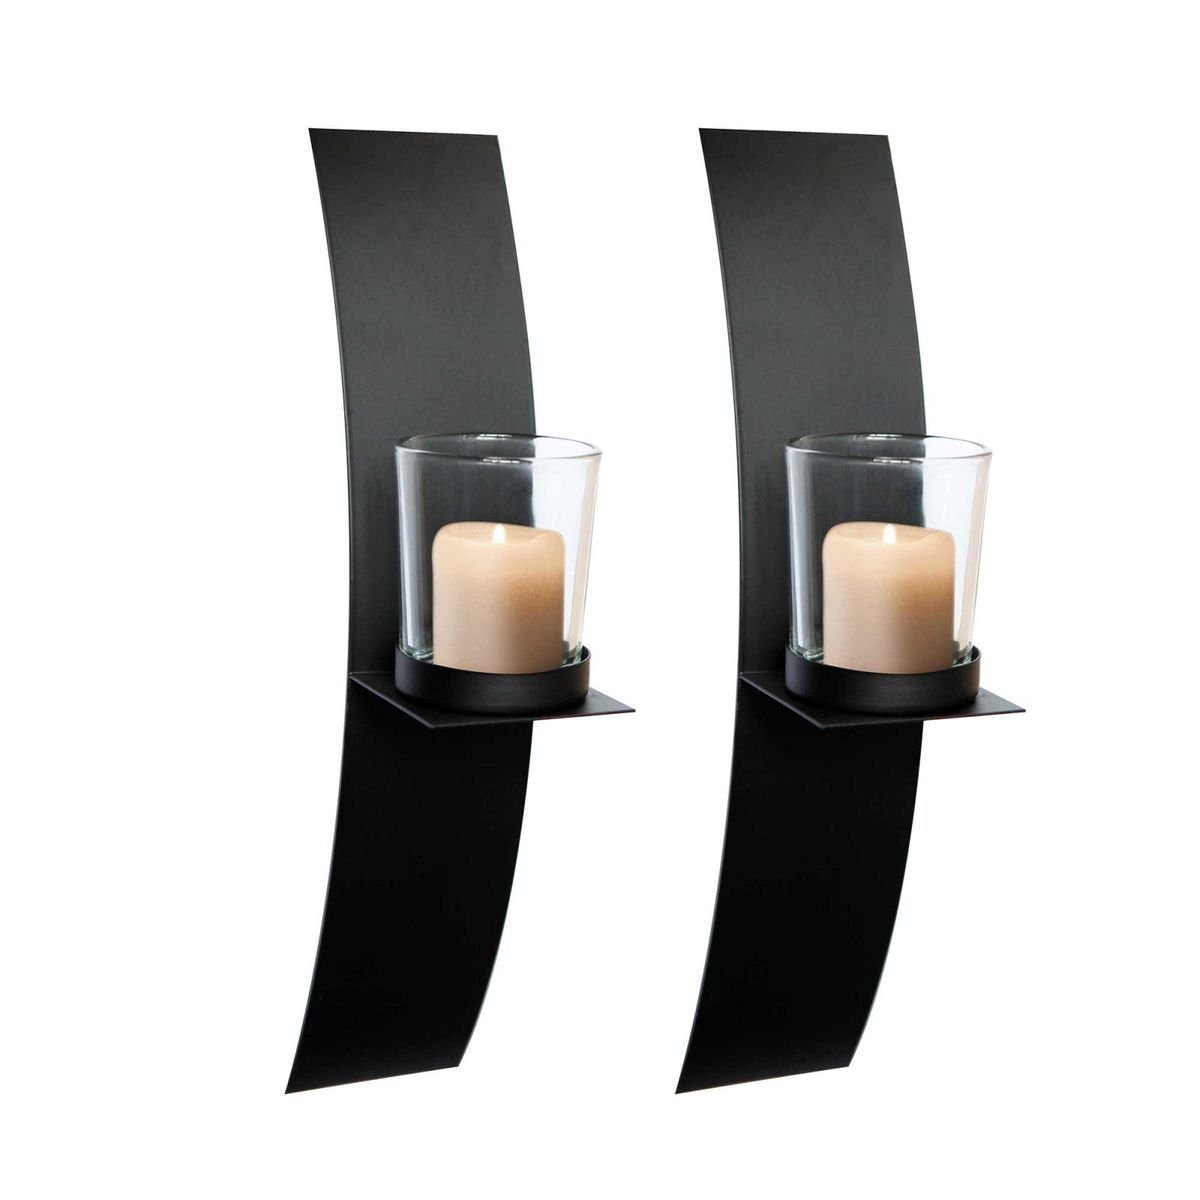 Wanddeko 2er-Set Kerzenständer Glas Metall Linder GmbH LEX mit Wandkerzenhalter Wandlicht schwarz Exclusiv